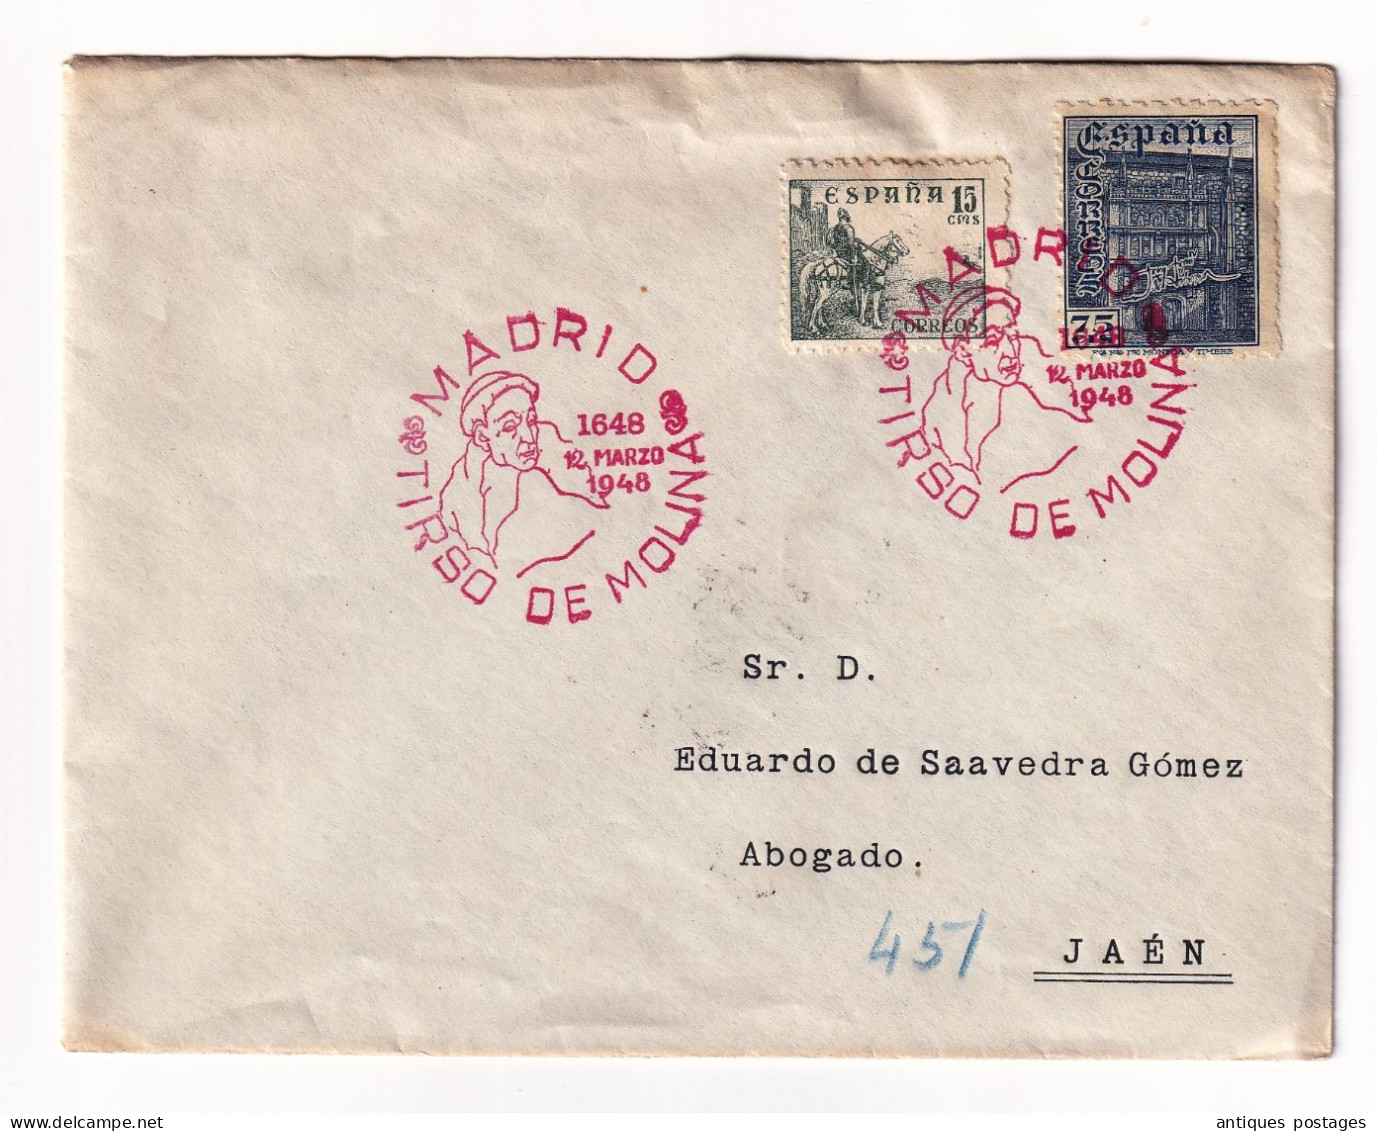 Lettres 12 Marso 1948 Espagne Madrid Matasello Tirso De Molina Certificado Jaén - Cartas & Documentos